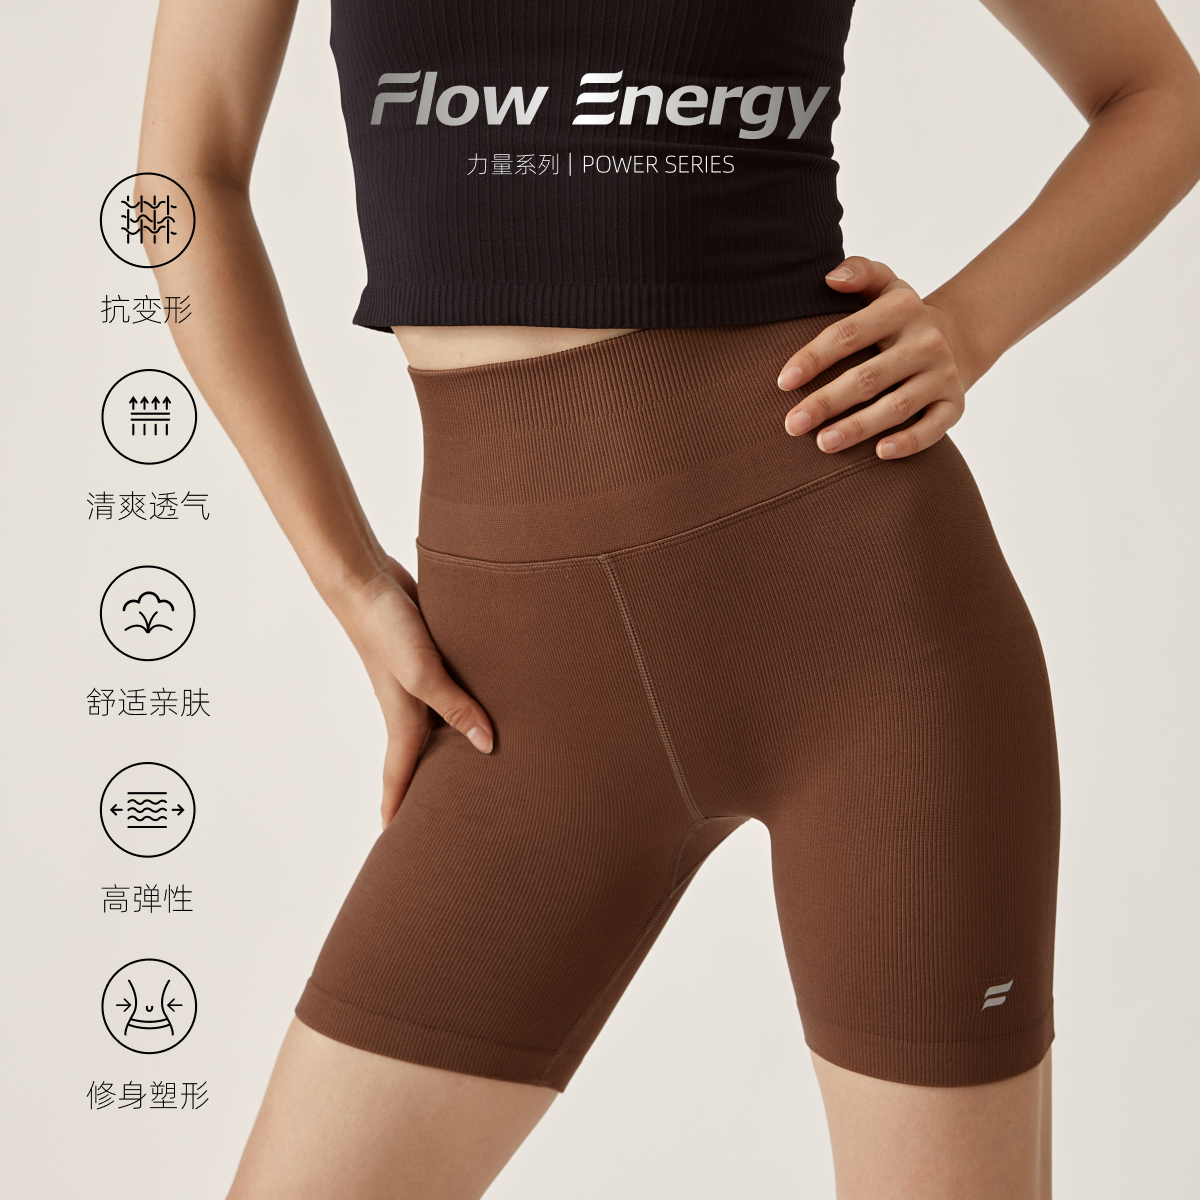 Flow energy 瑜伽裤骑行健身运动高腰收腹提臀打底高弹五分裤无缝